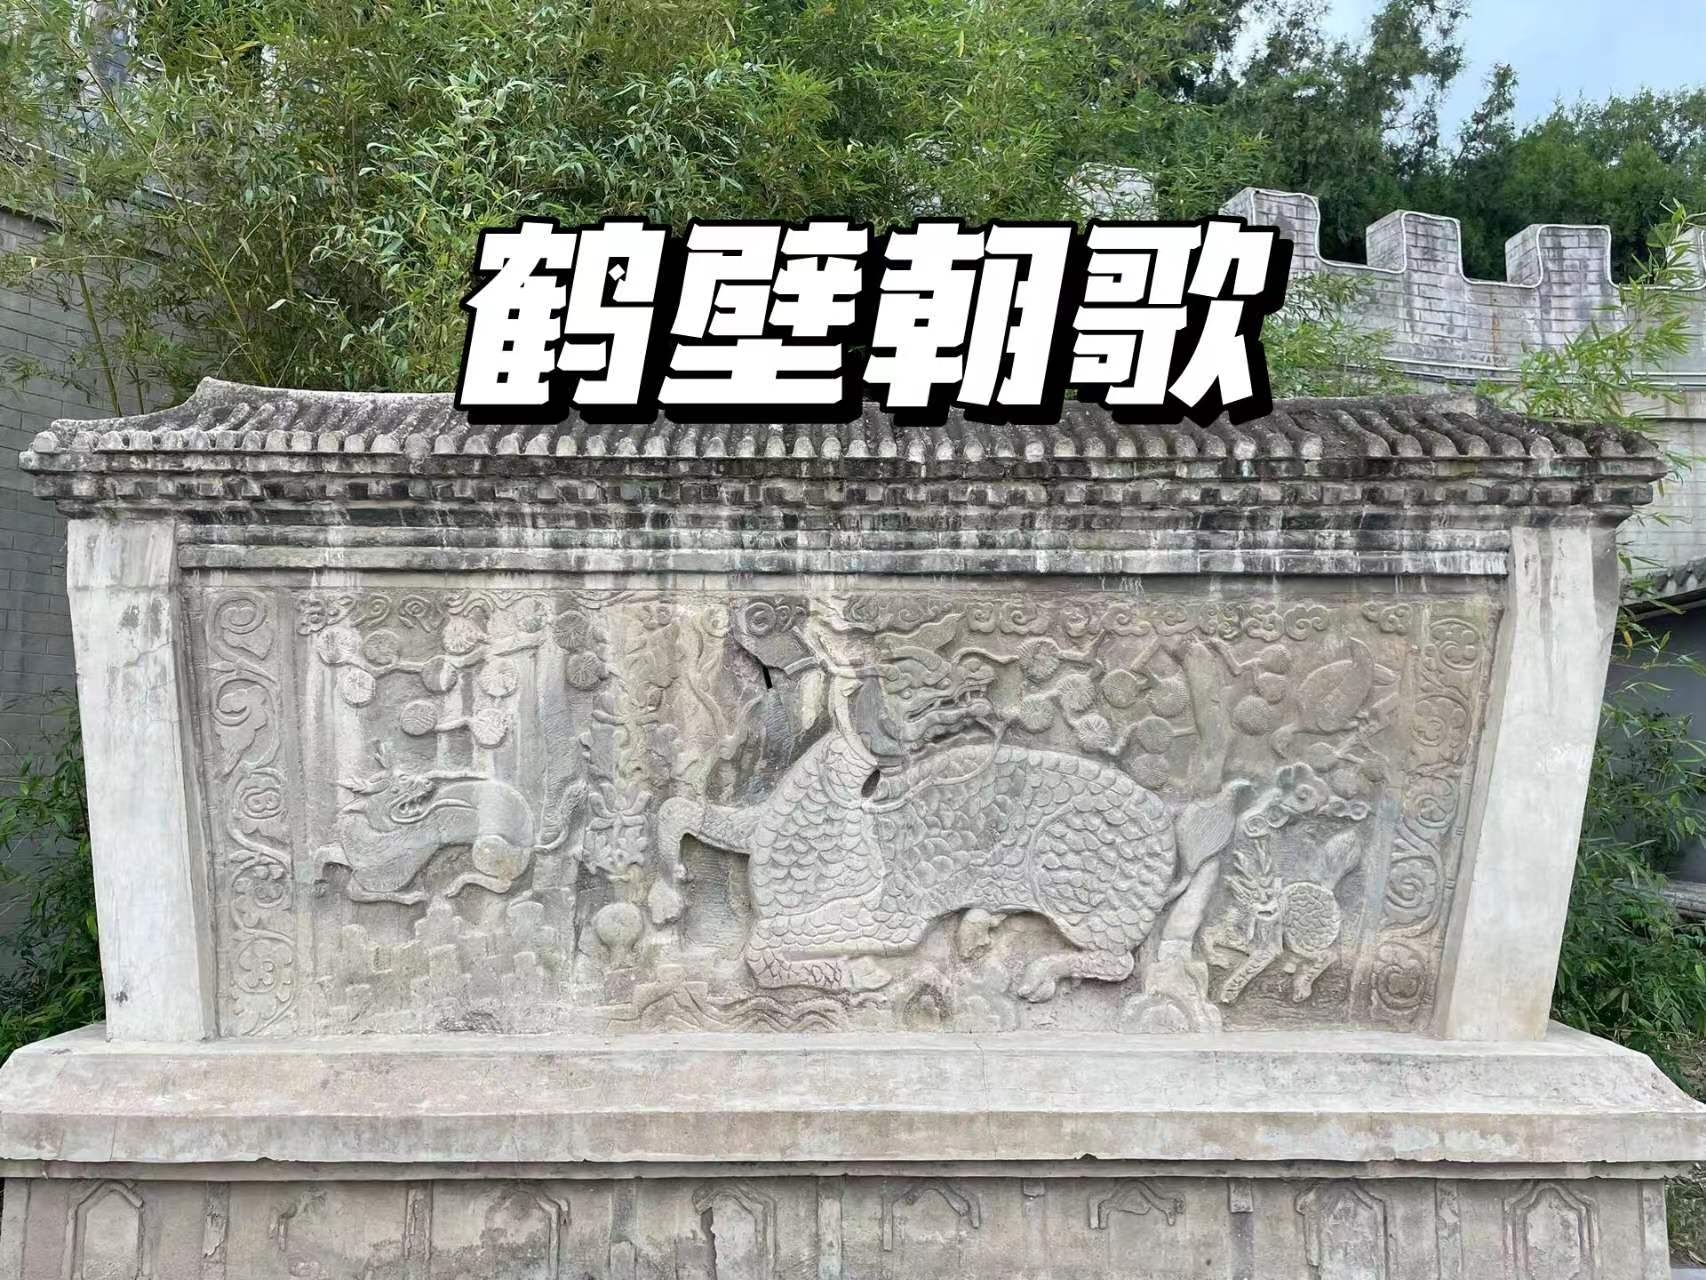 朝歌遗址公园是河南省鹤壁市的一处重要历史文化景点